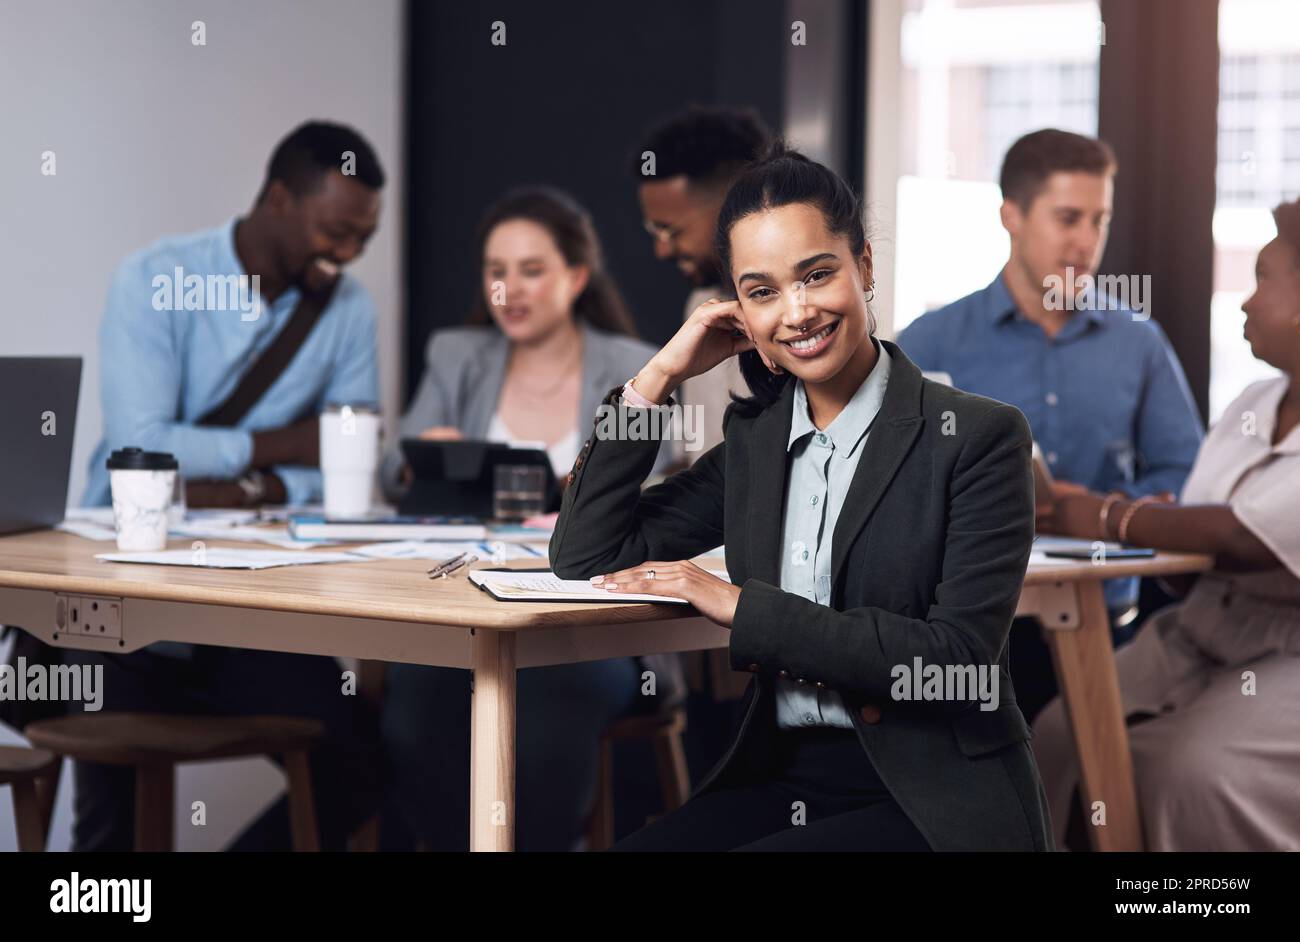 Selbstbewusst in ihrer Karriere. Porträt einer jungen Geschäftsfrau, die in einem Büro mit ihren Kollegen im Hintergrund sitzt. Stockfoto